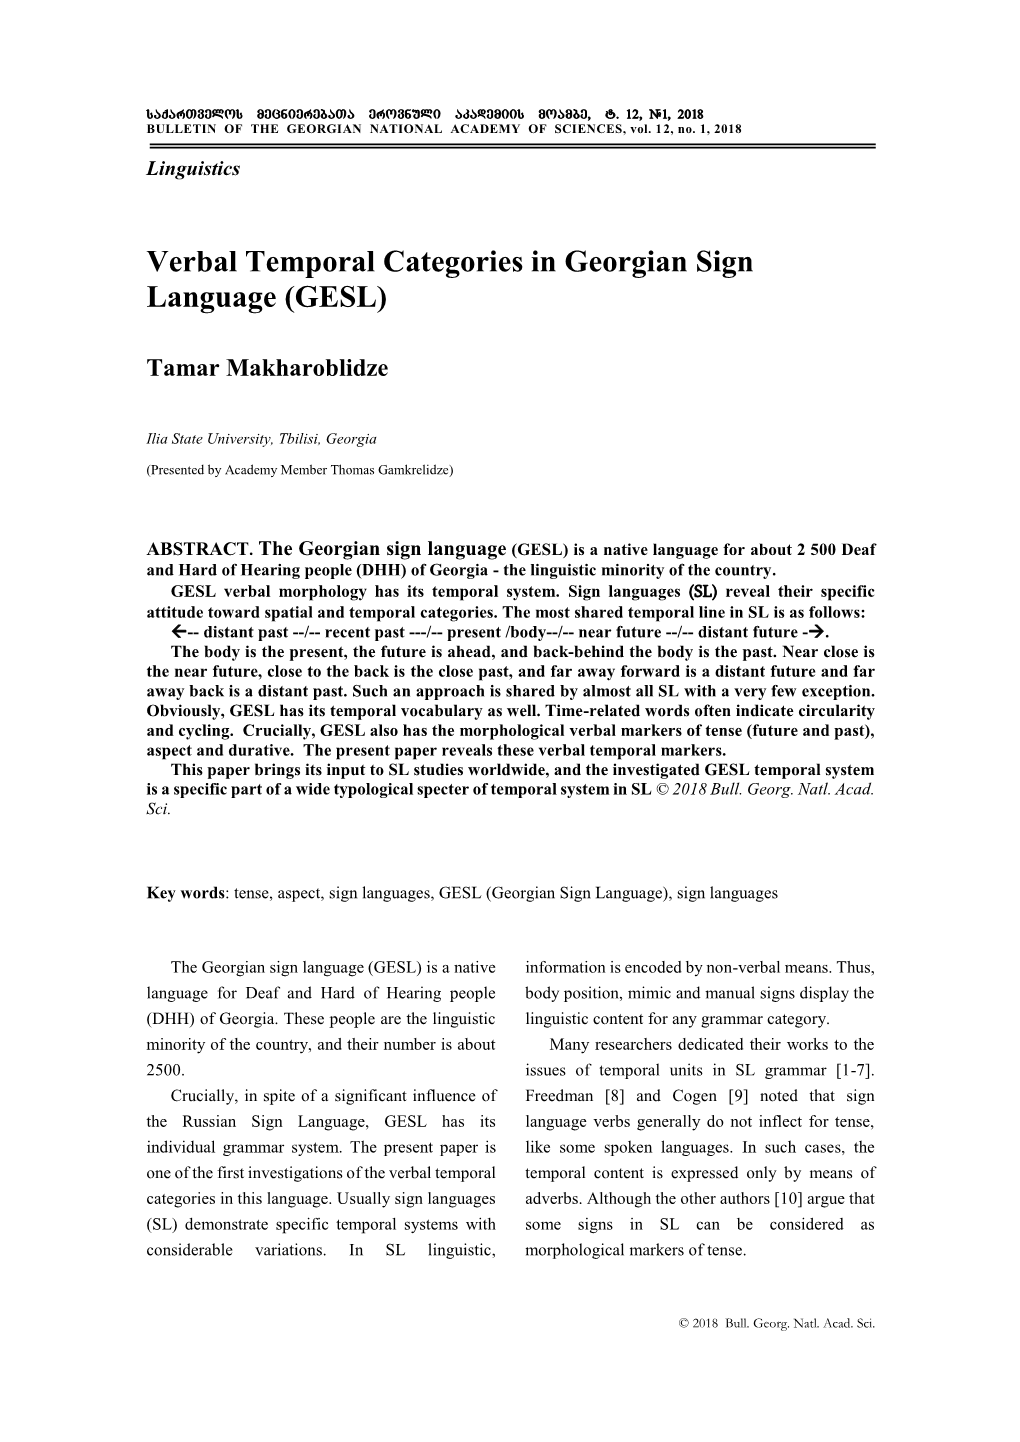 Verbal Temporal Categories in Georgian Sign Language (GESL)